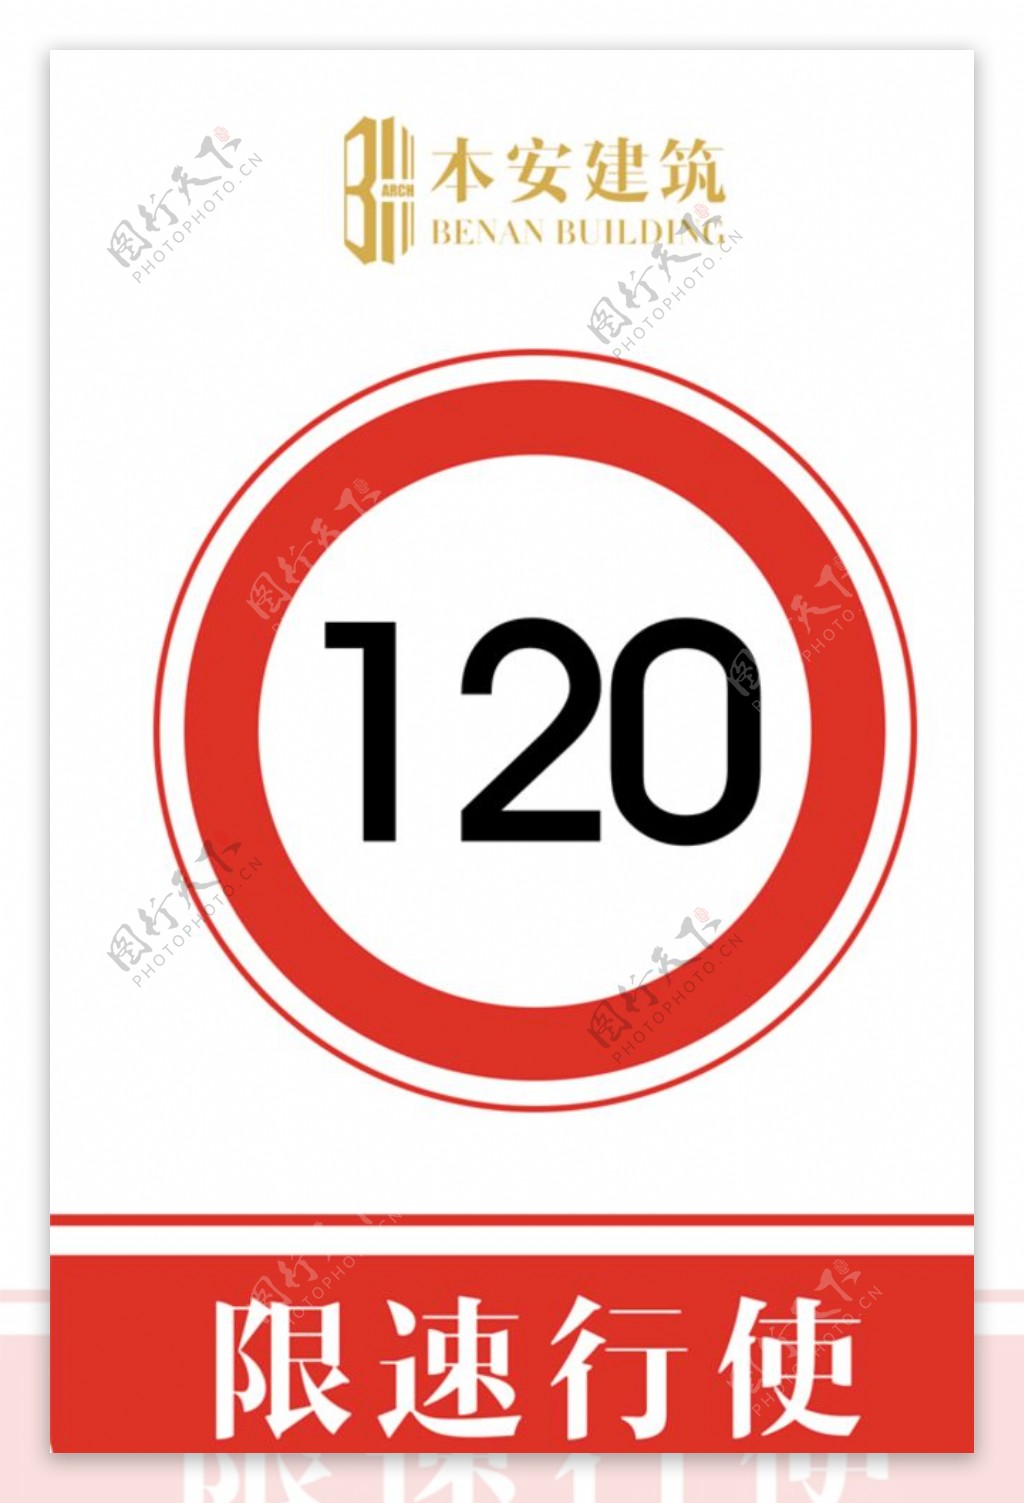 限速行使120公里交通安全标识